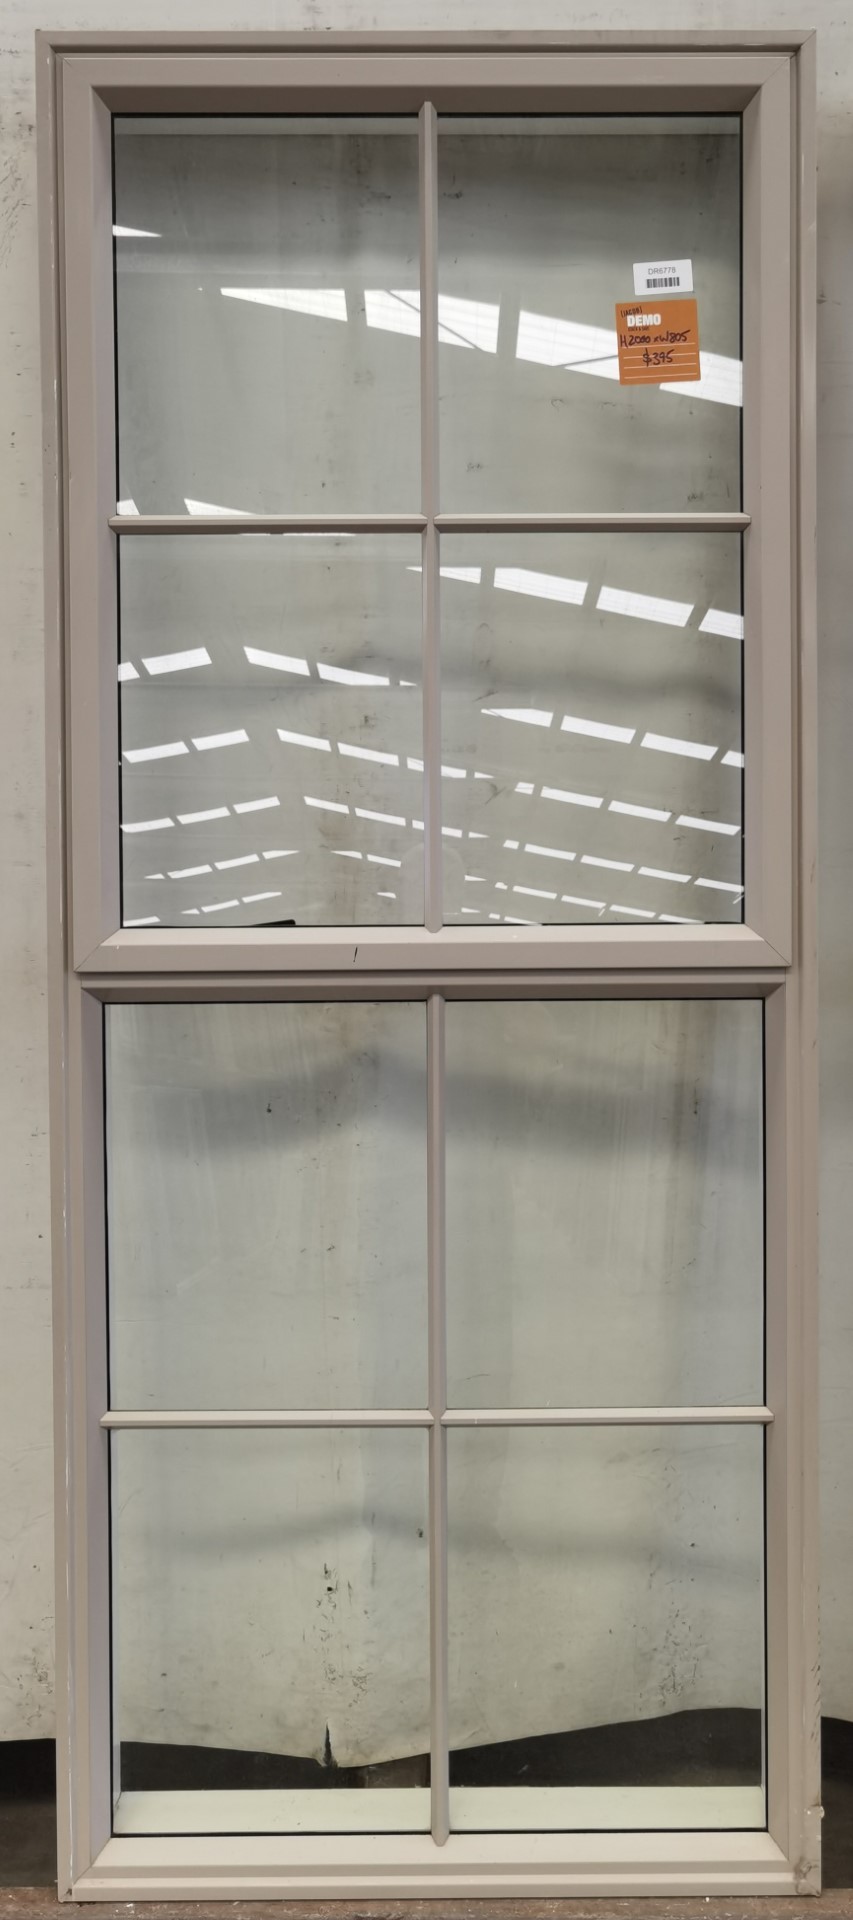 Bronco aluminium single colonial awning window